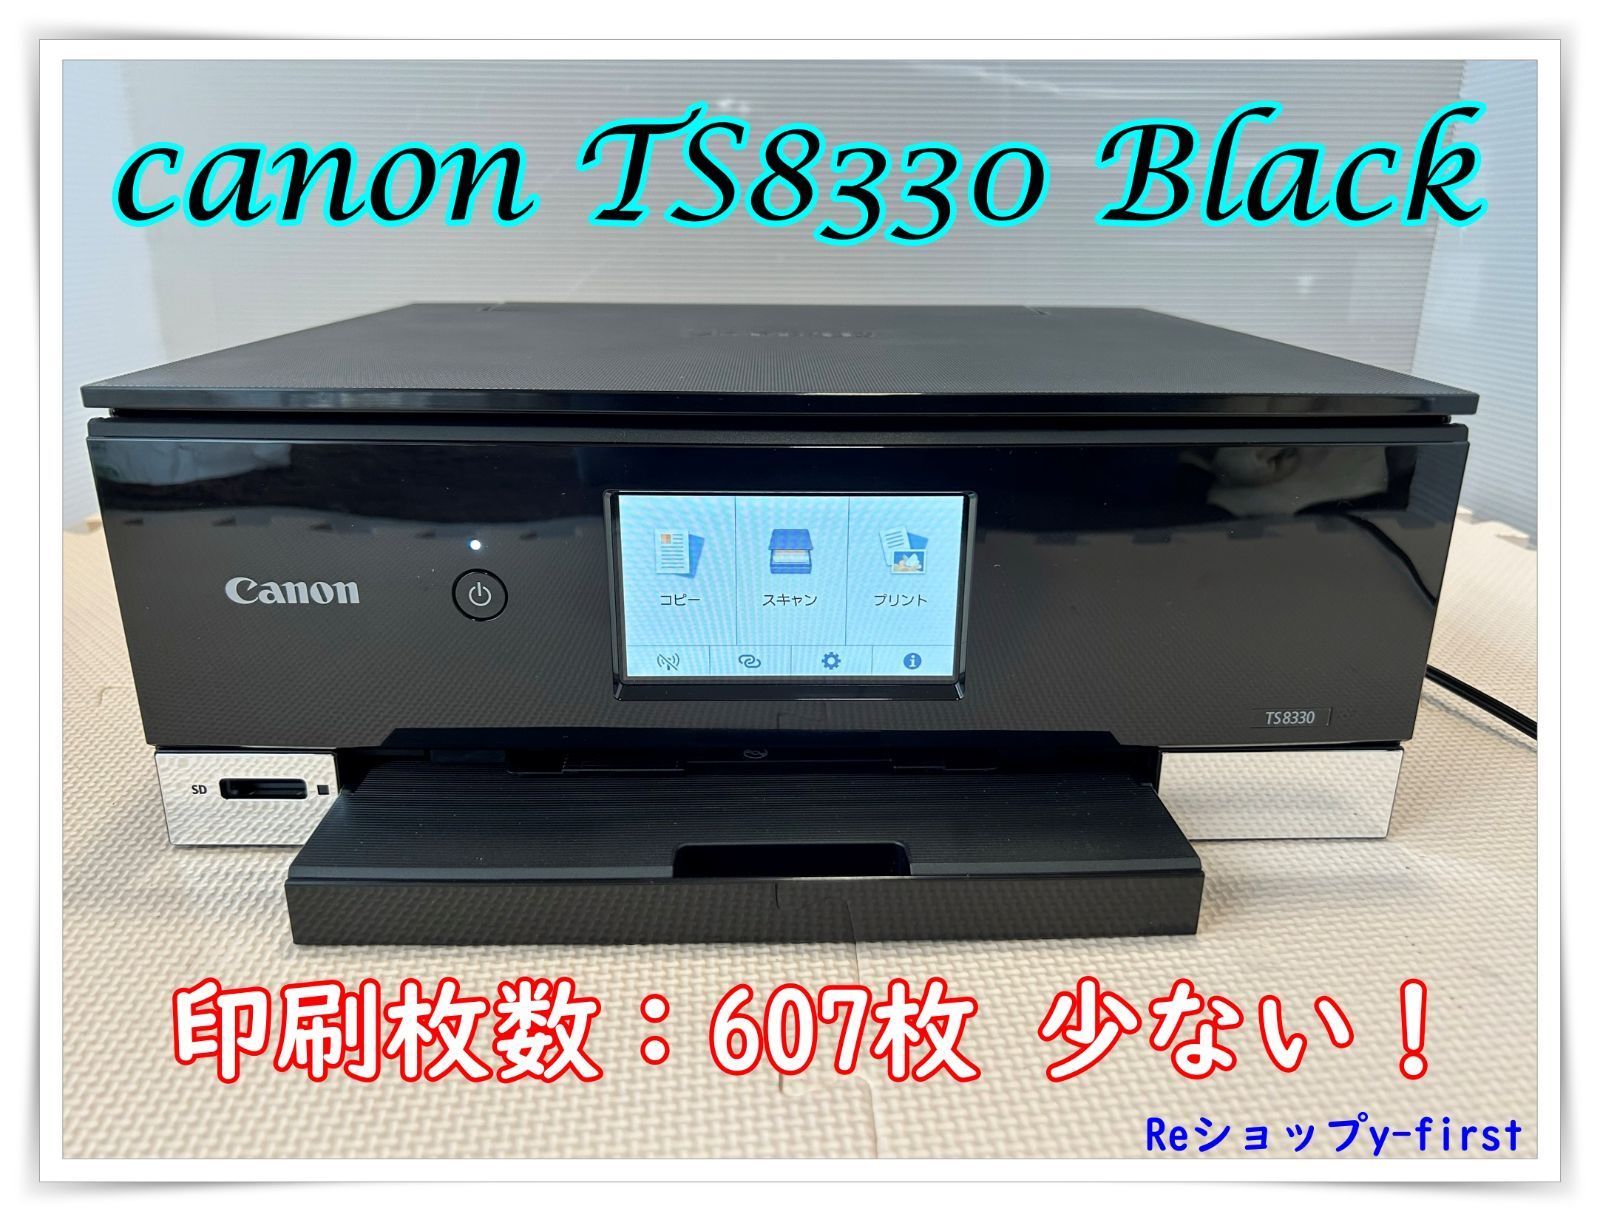 熱い販売 Canon PIXUS TS8330BK複合機インクジェットプリンター元箱にて発送 インクジェットプリンター PIXUS TS8330BK  www.subnet.co.jp